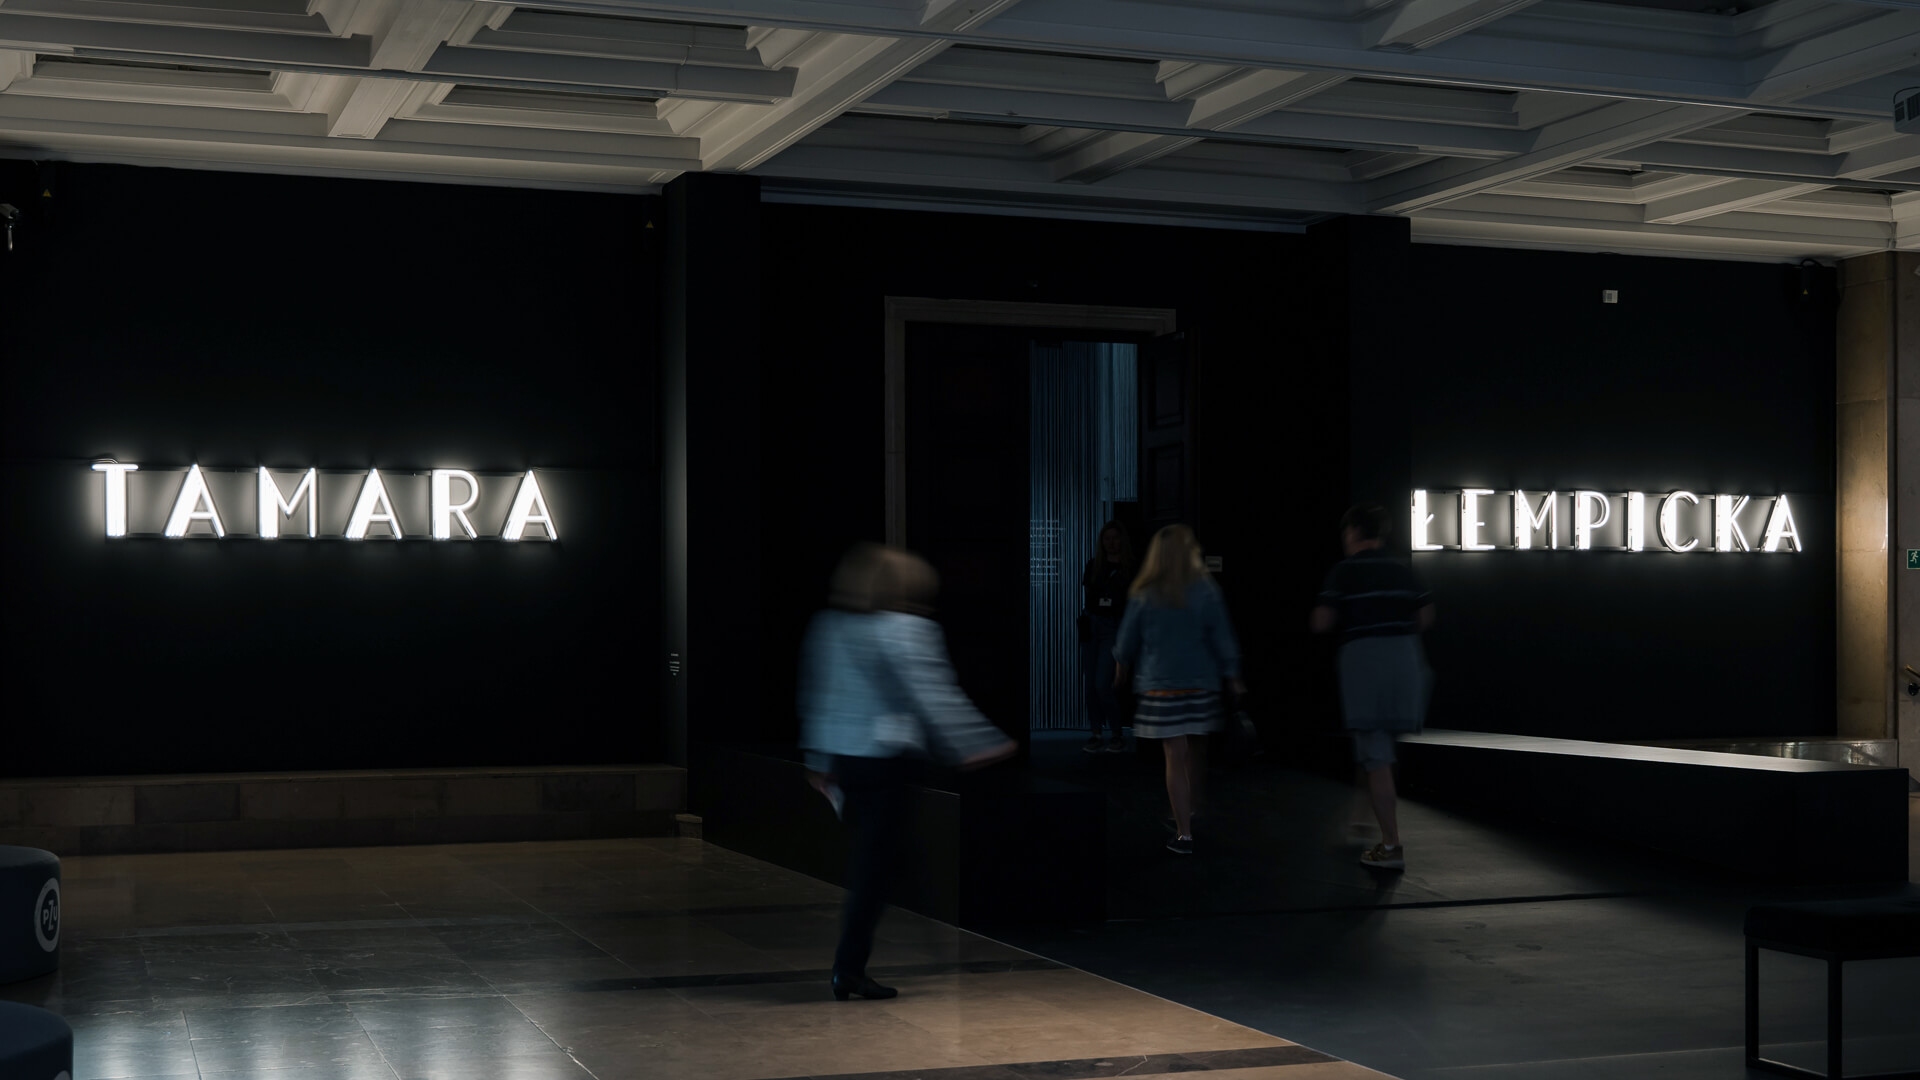 Neon Tamara Lempicka - Retro-Neonbuchstaben in Weiß